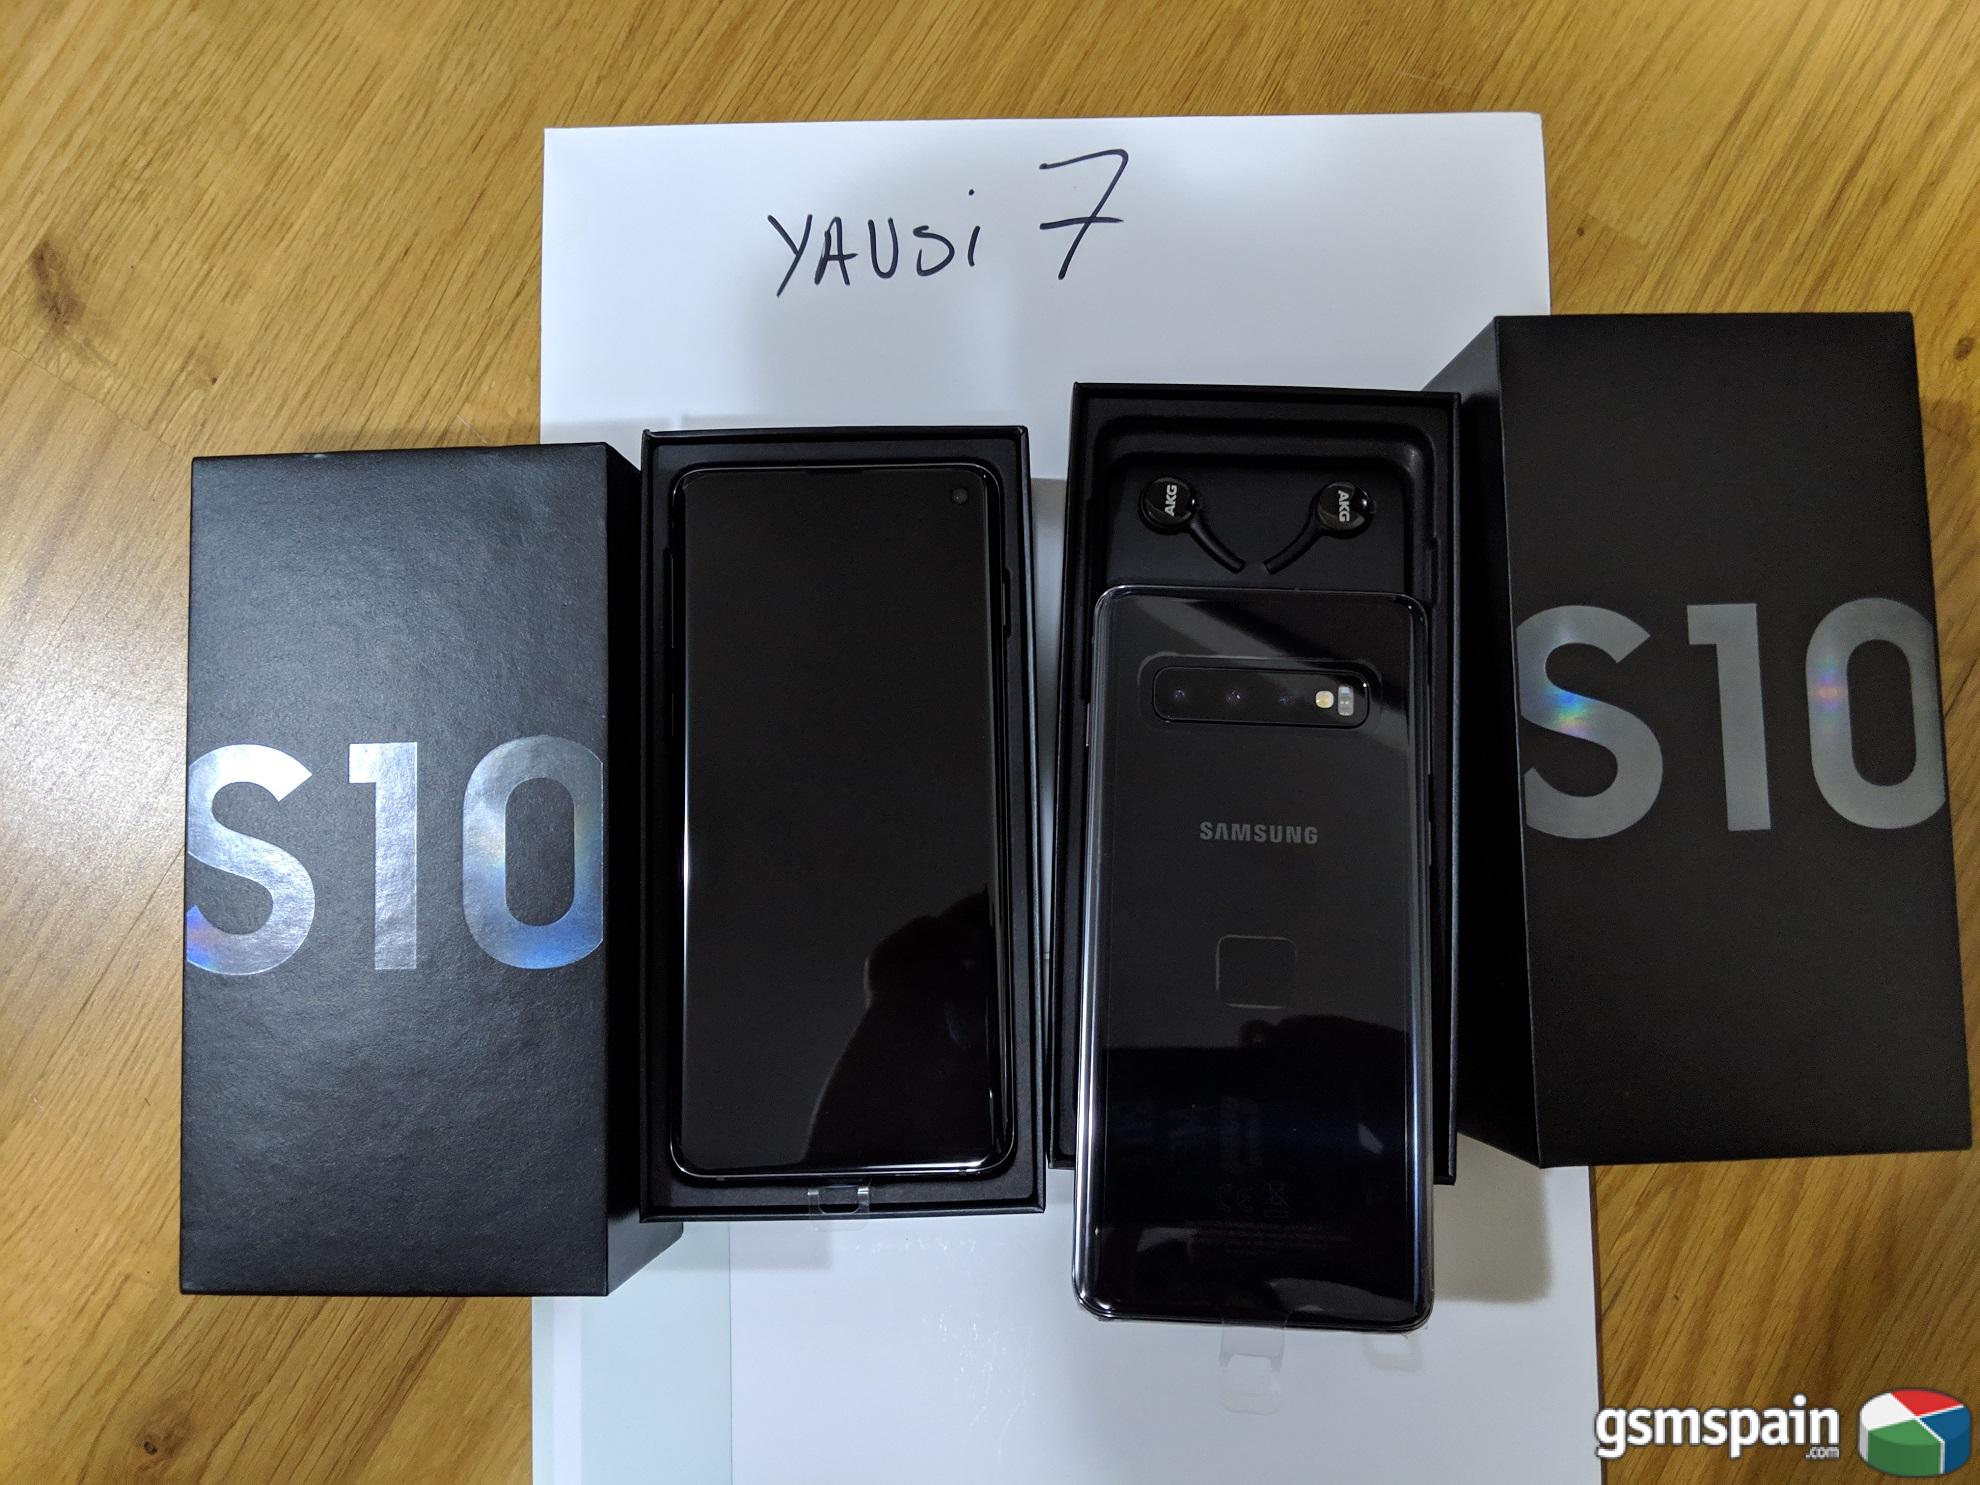 [VENDO] 2x Samsung Galaxy s10 negros - preciazos y pagados al contado